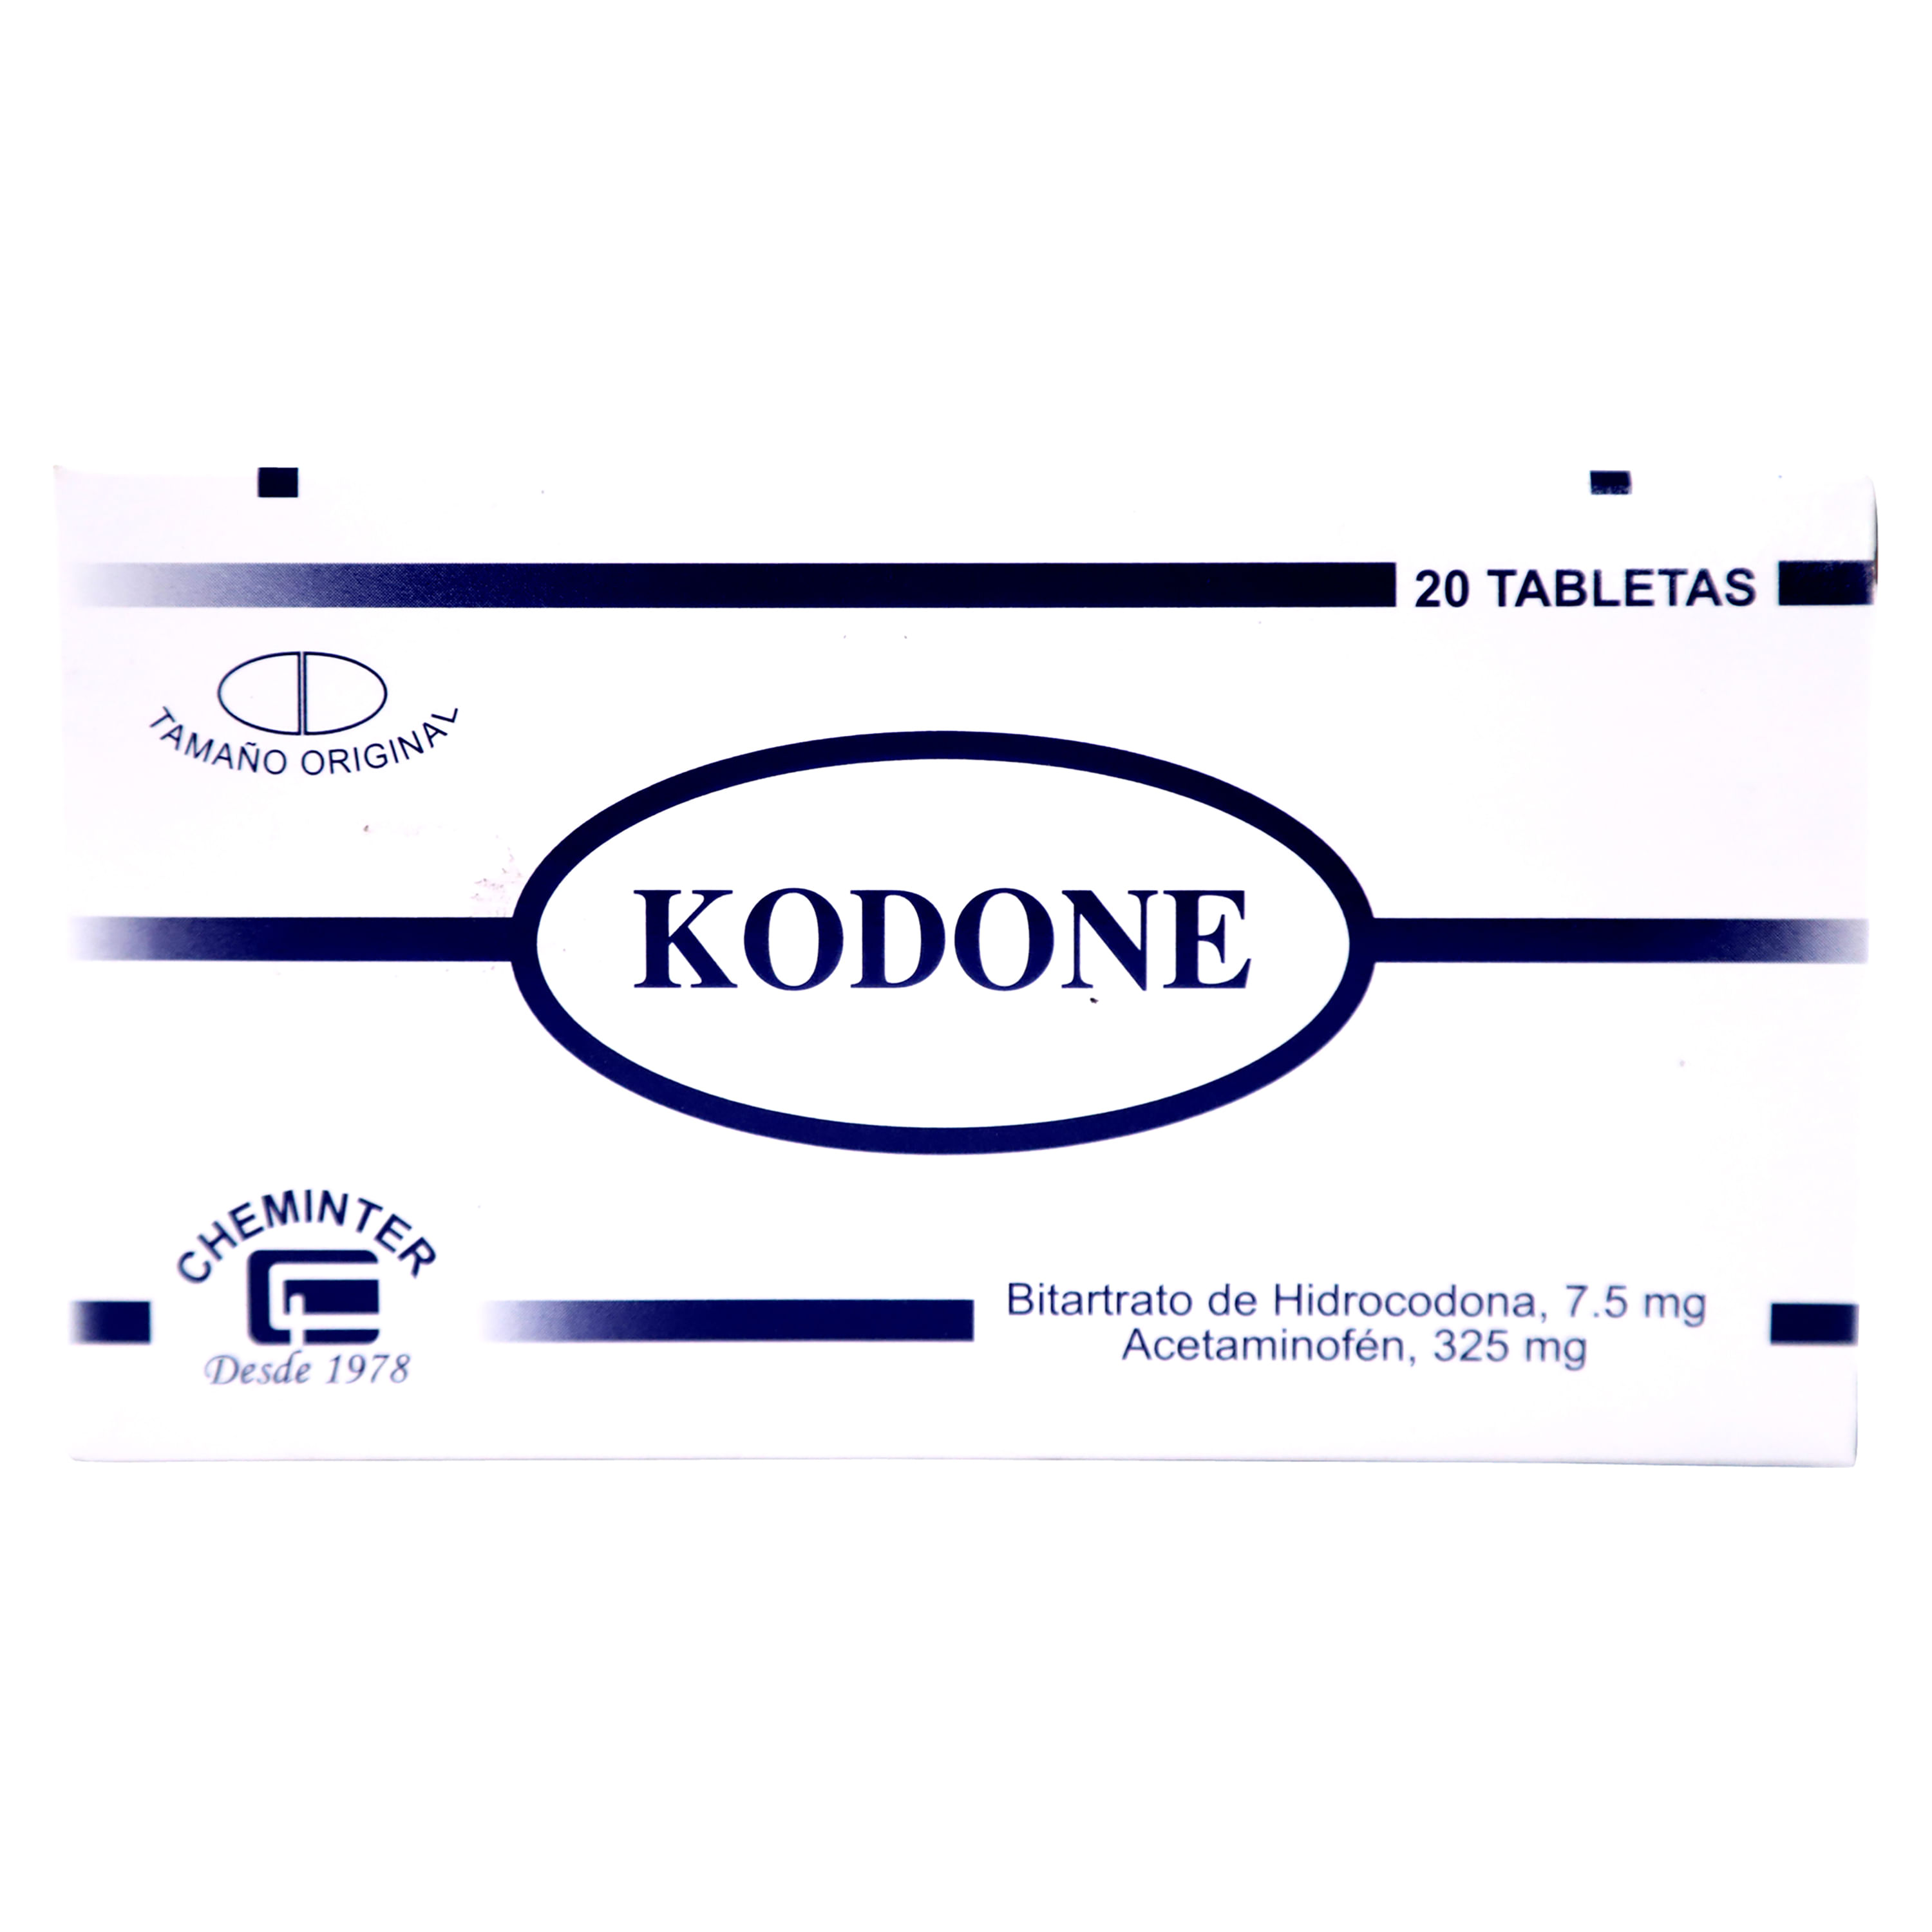 Kodone-Una-Caja-Kodone-20-Tabletas-1-29938